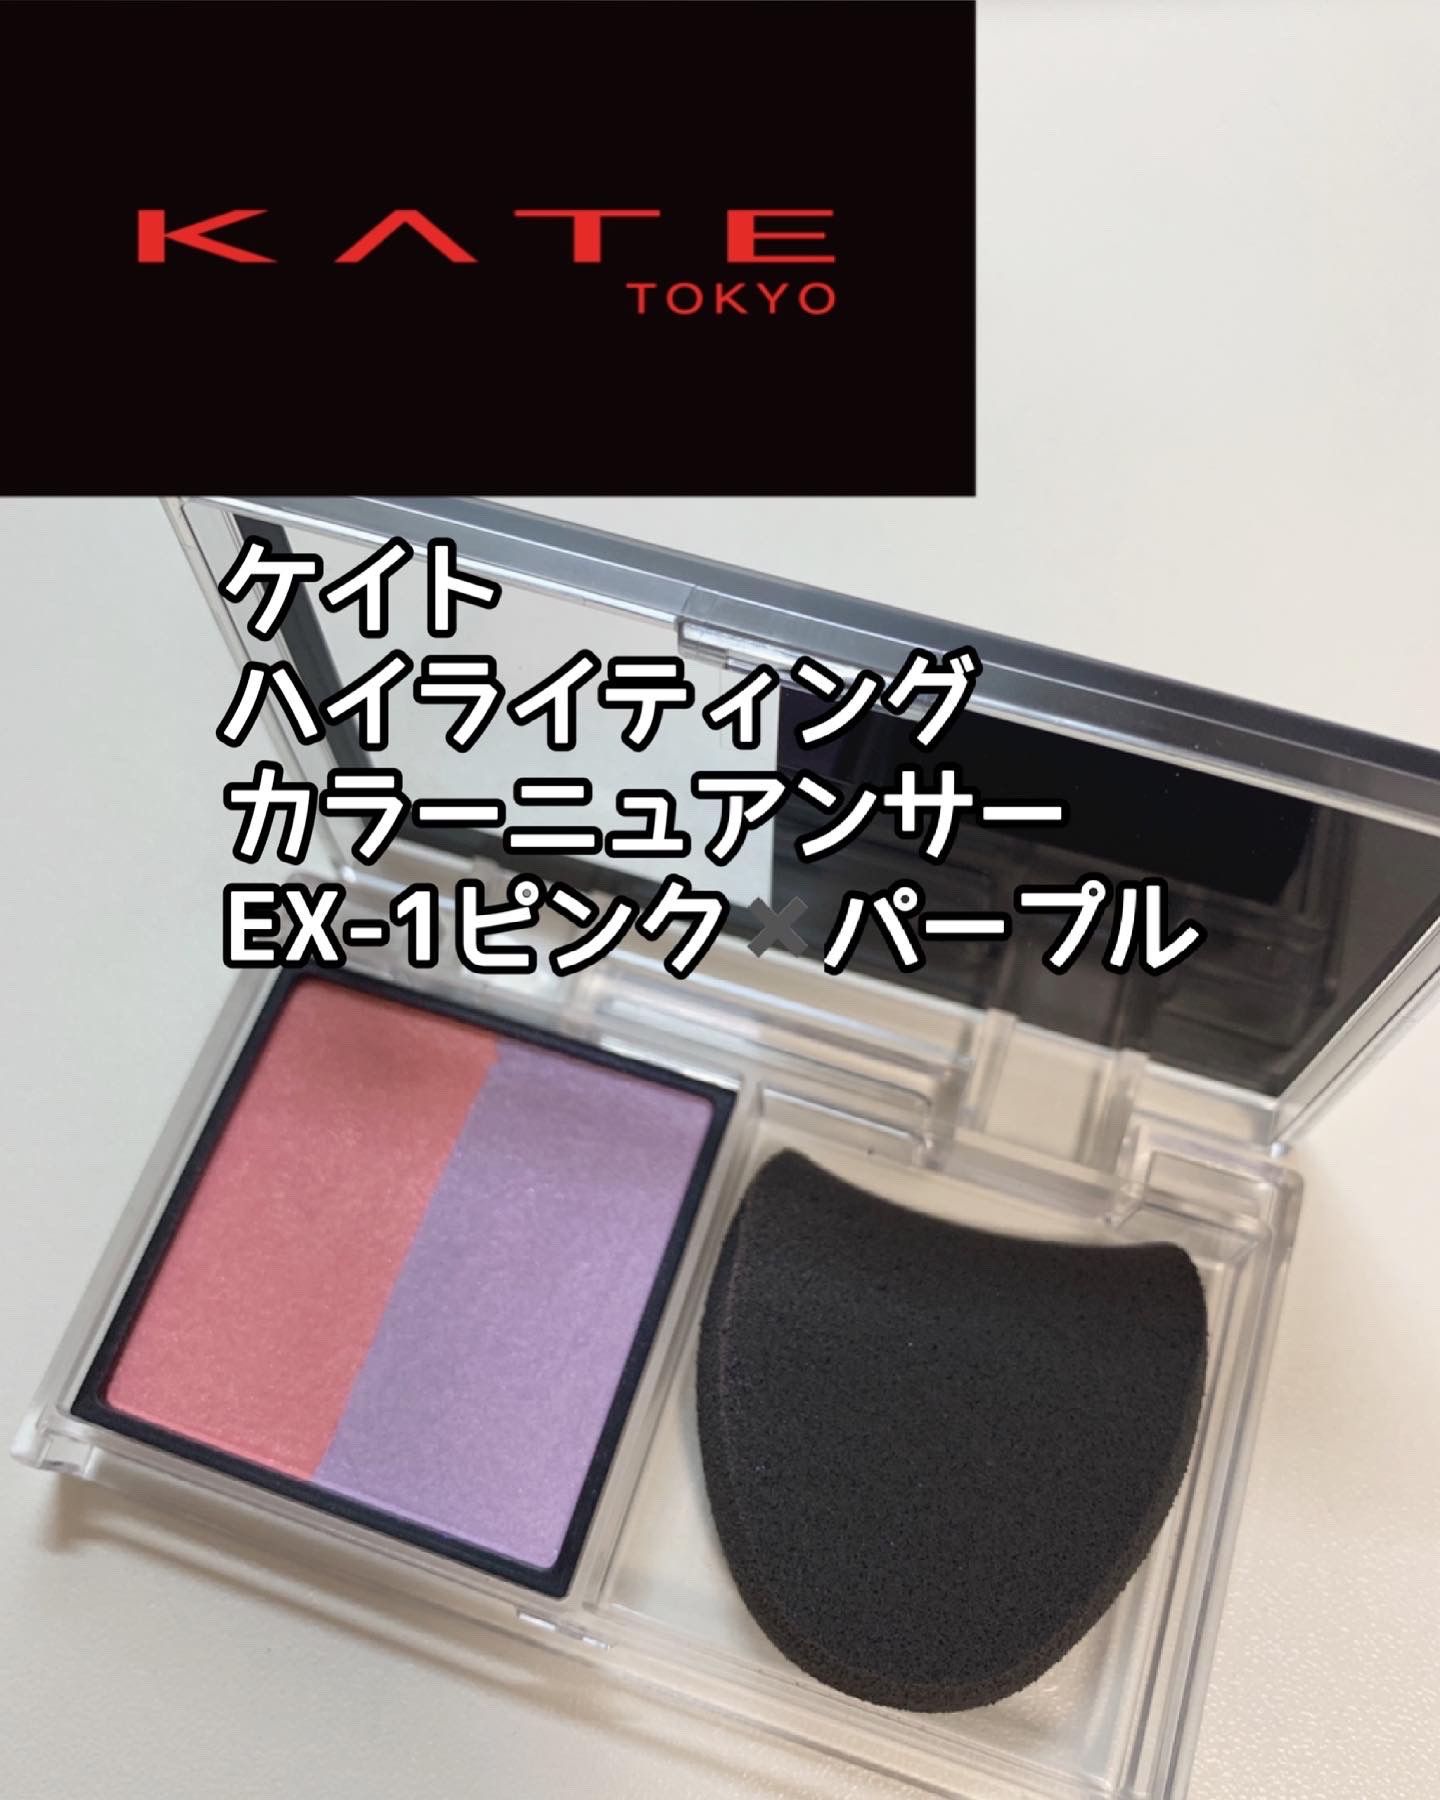 ケイト / ハイライティングカラーニュアンサー EX-1 ピンク×パープルの 